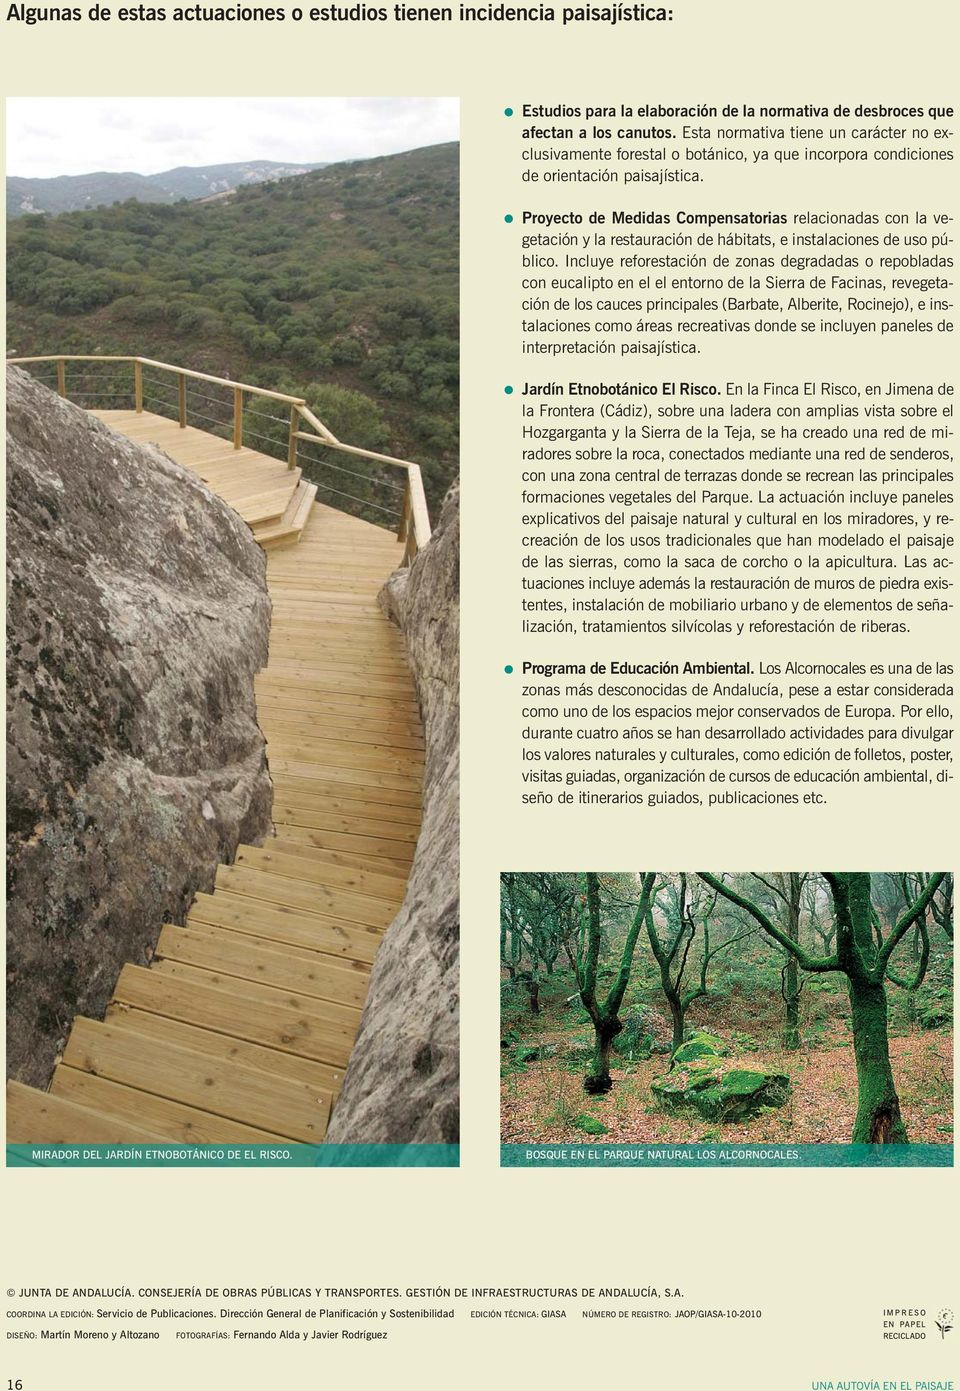 Proyecto de Medidas Compensatorias relacionadas con la vegetación y la restauración de hábitats, e instalaciones de uso público.